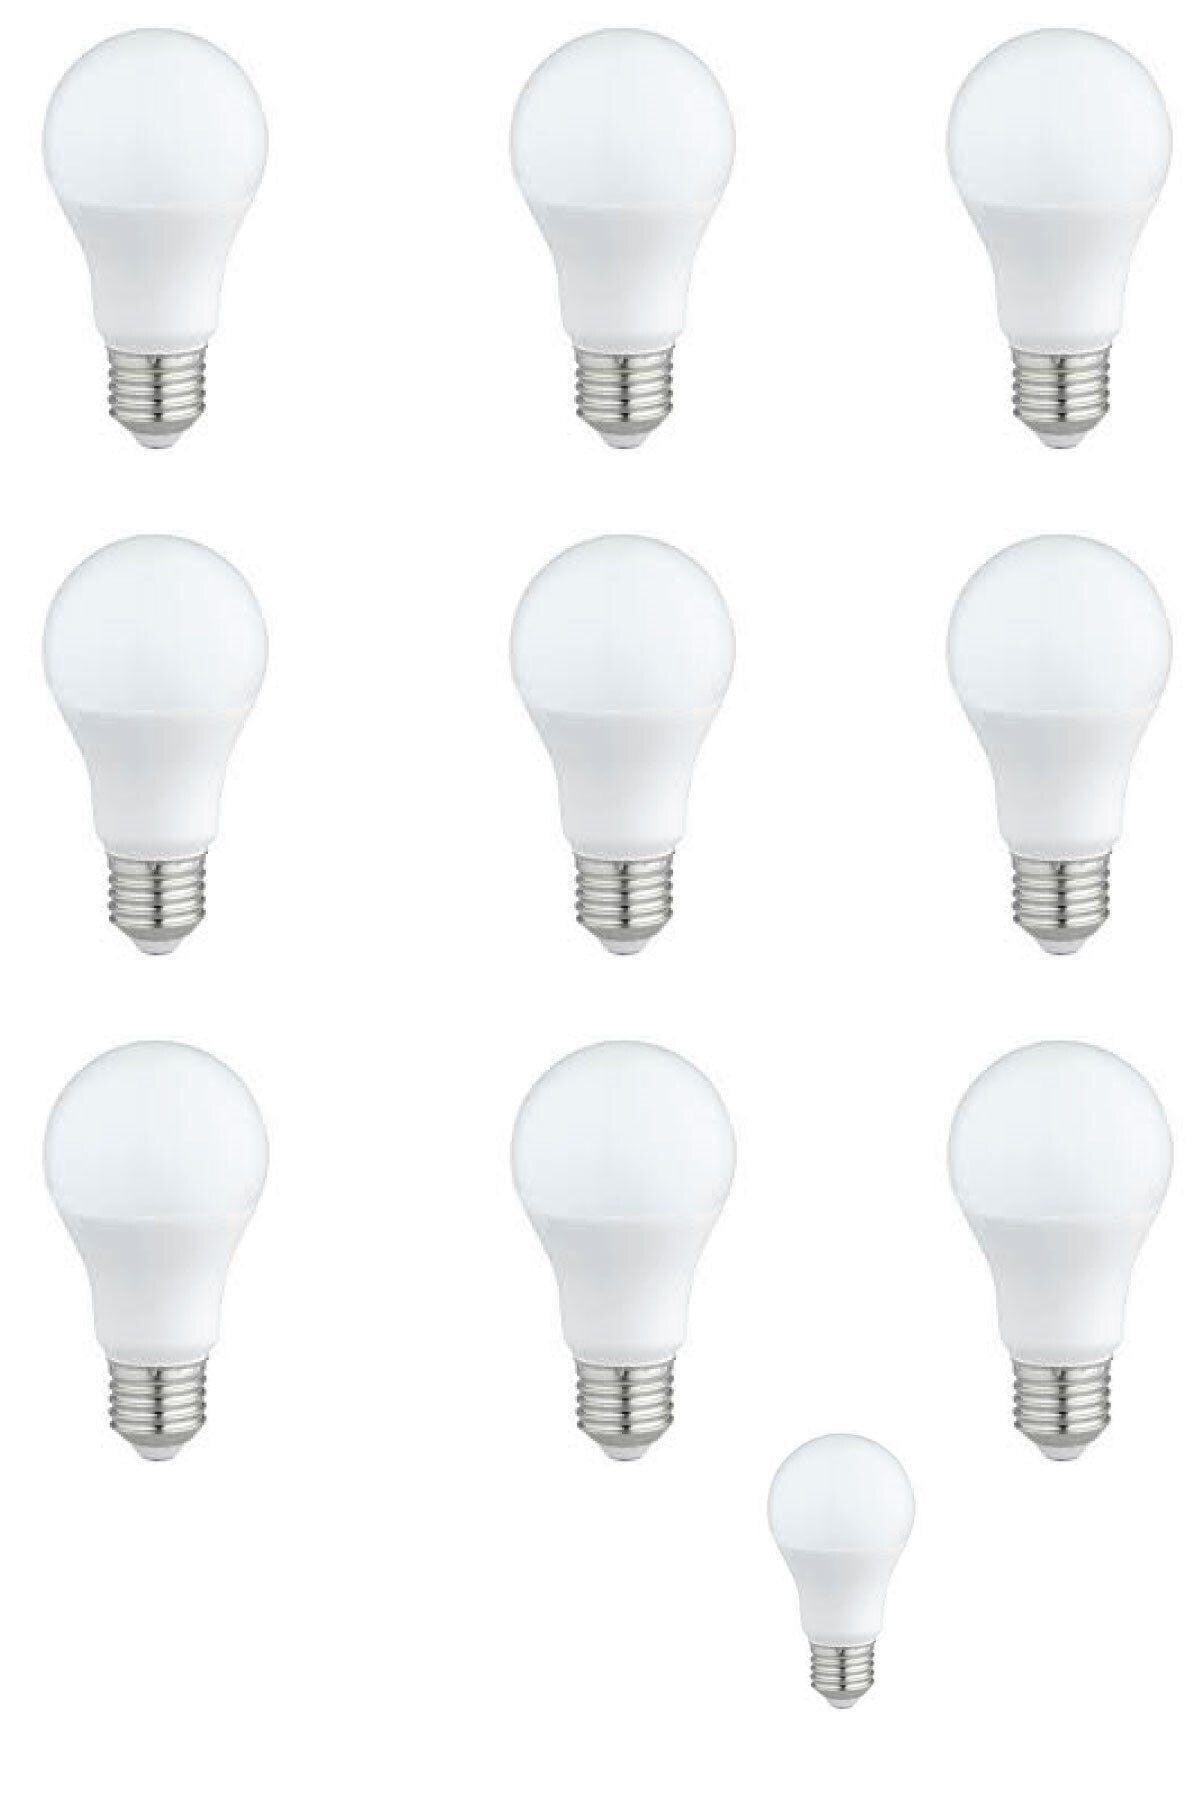 Led Bulb 7w White Light Lighting Lamp